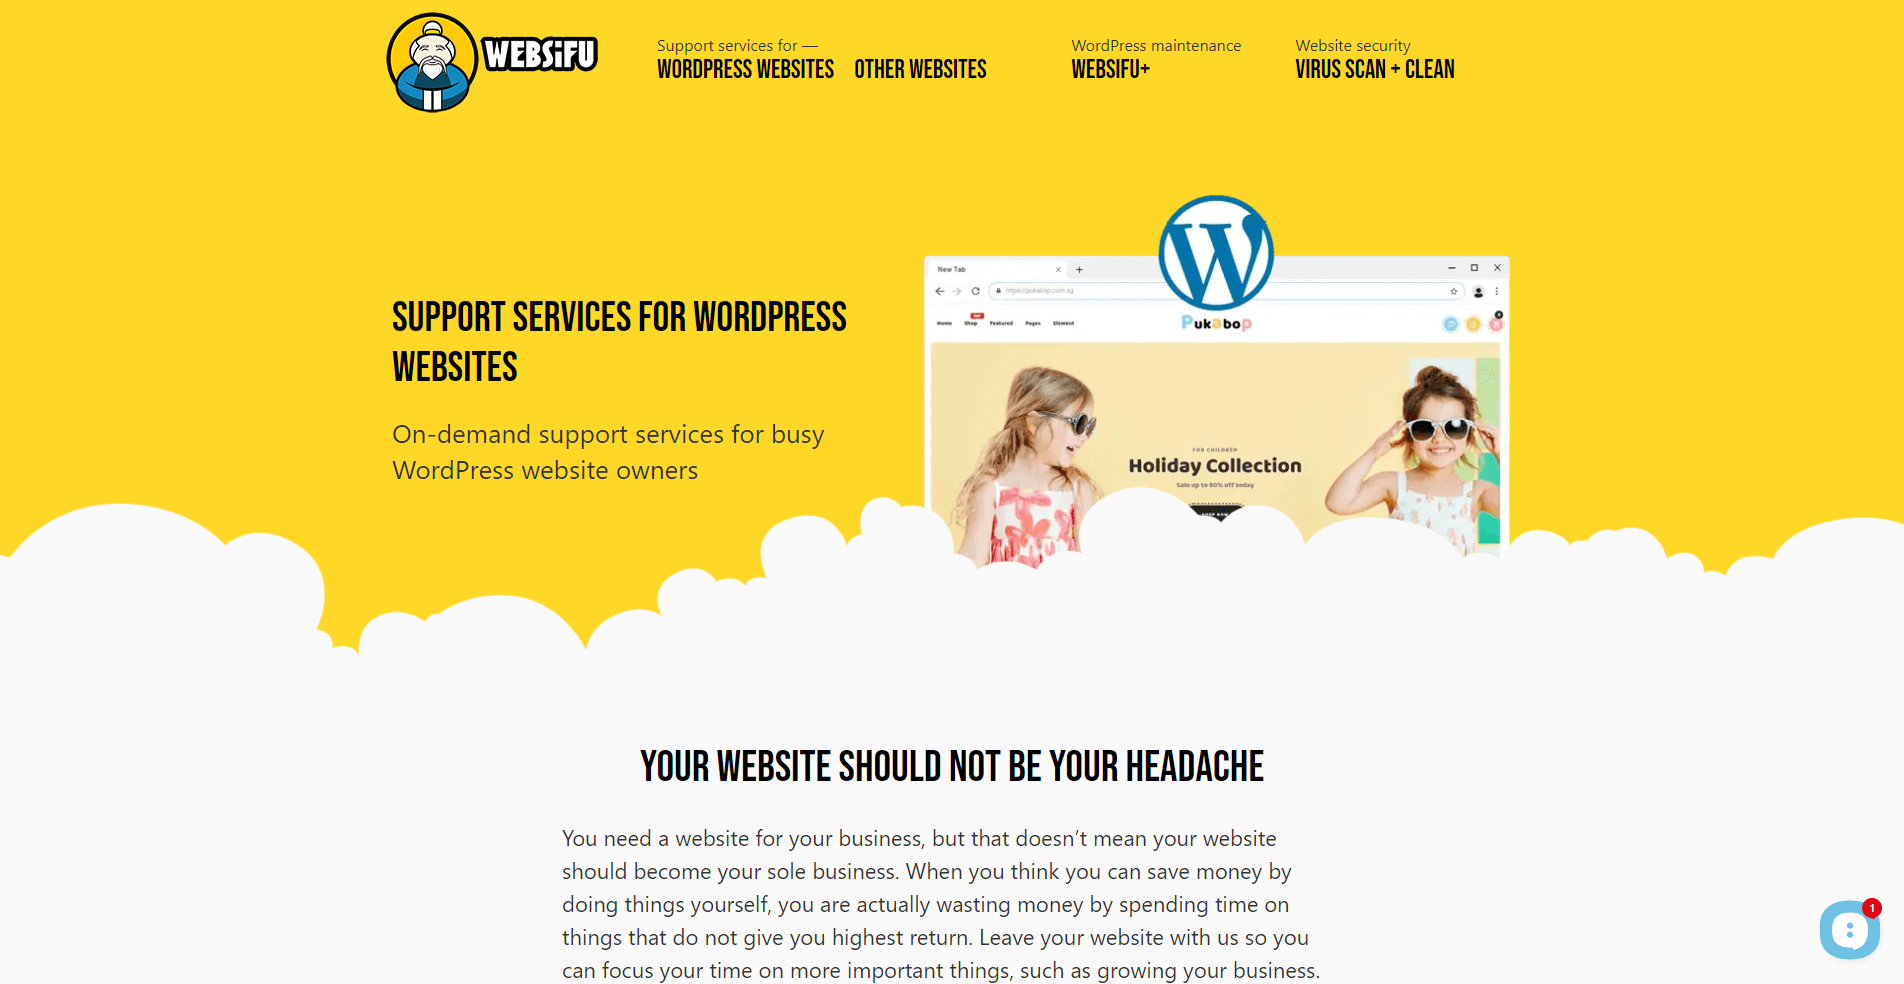 websifu-old-webmaster